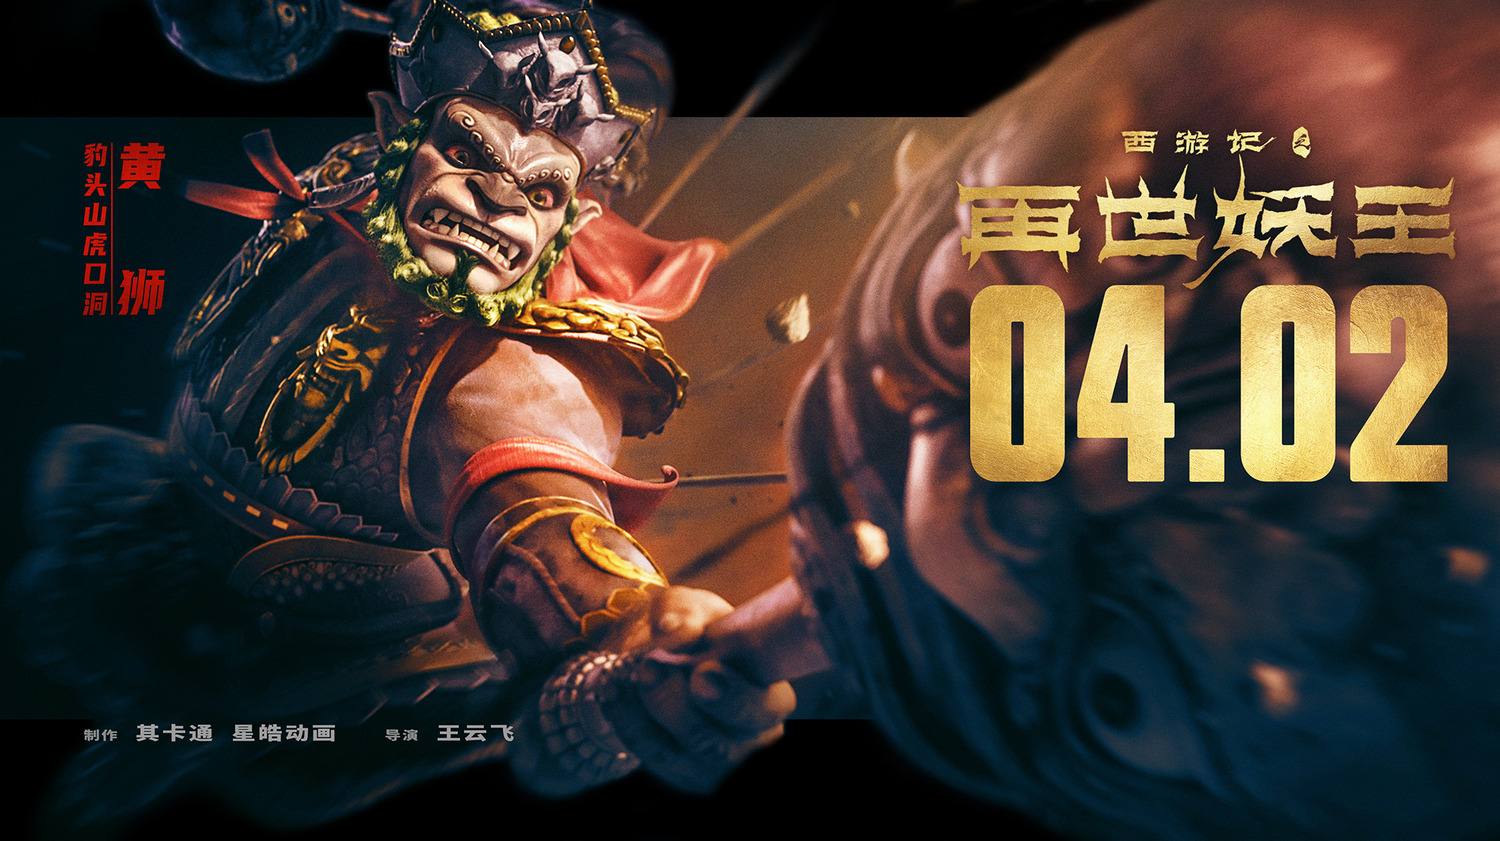 Extra Large Movie Poster Image for Xi You Ji Zhi Zai Shi Yao Wang (#11 of 21)